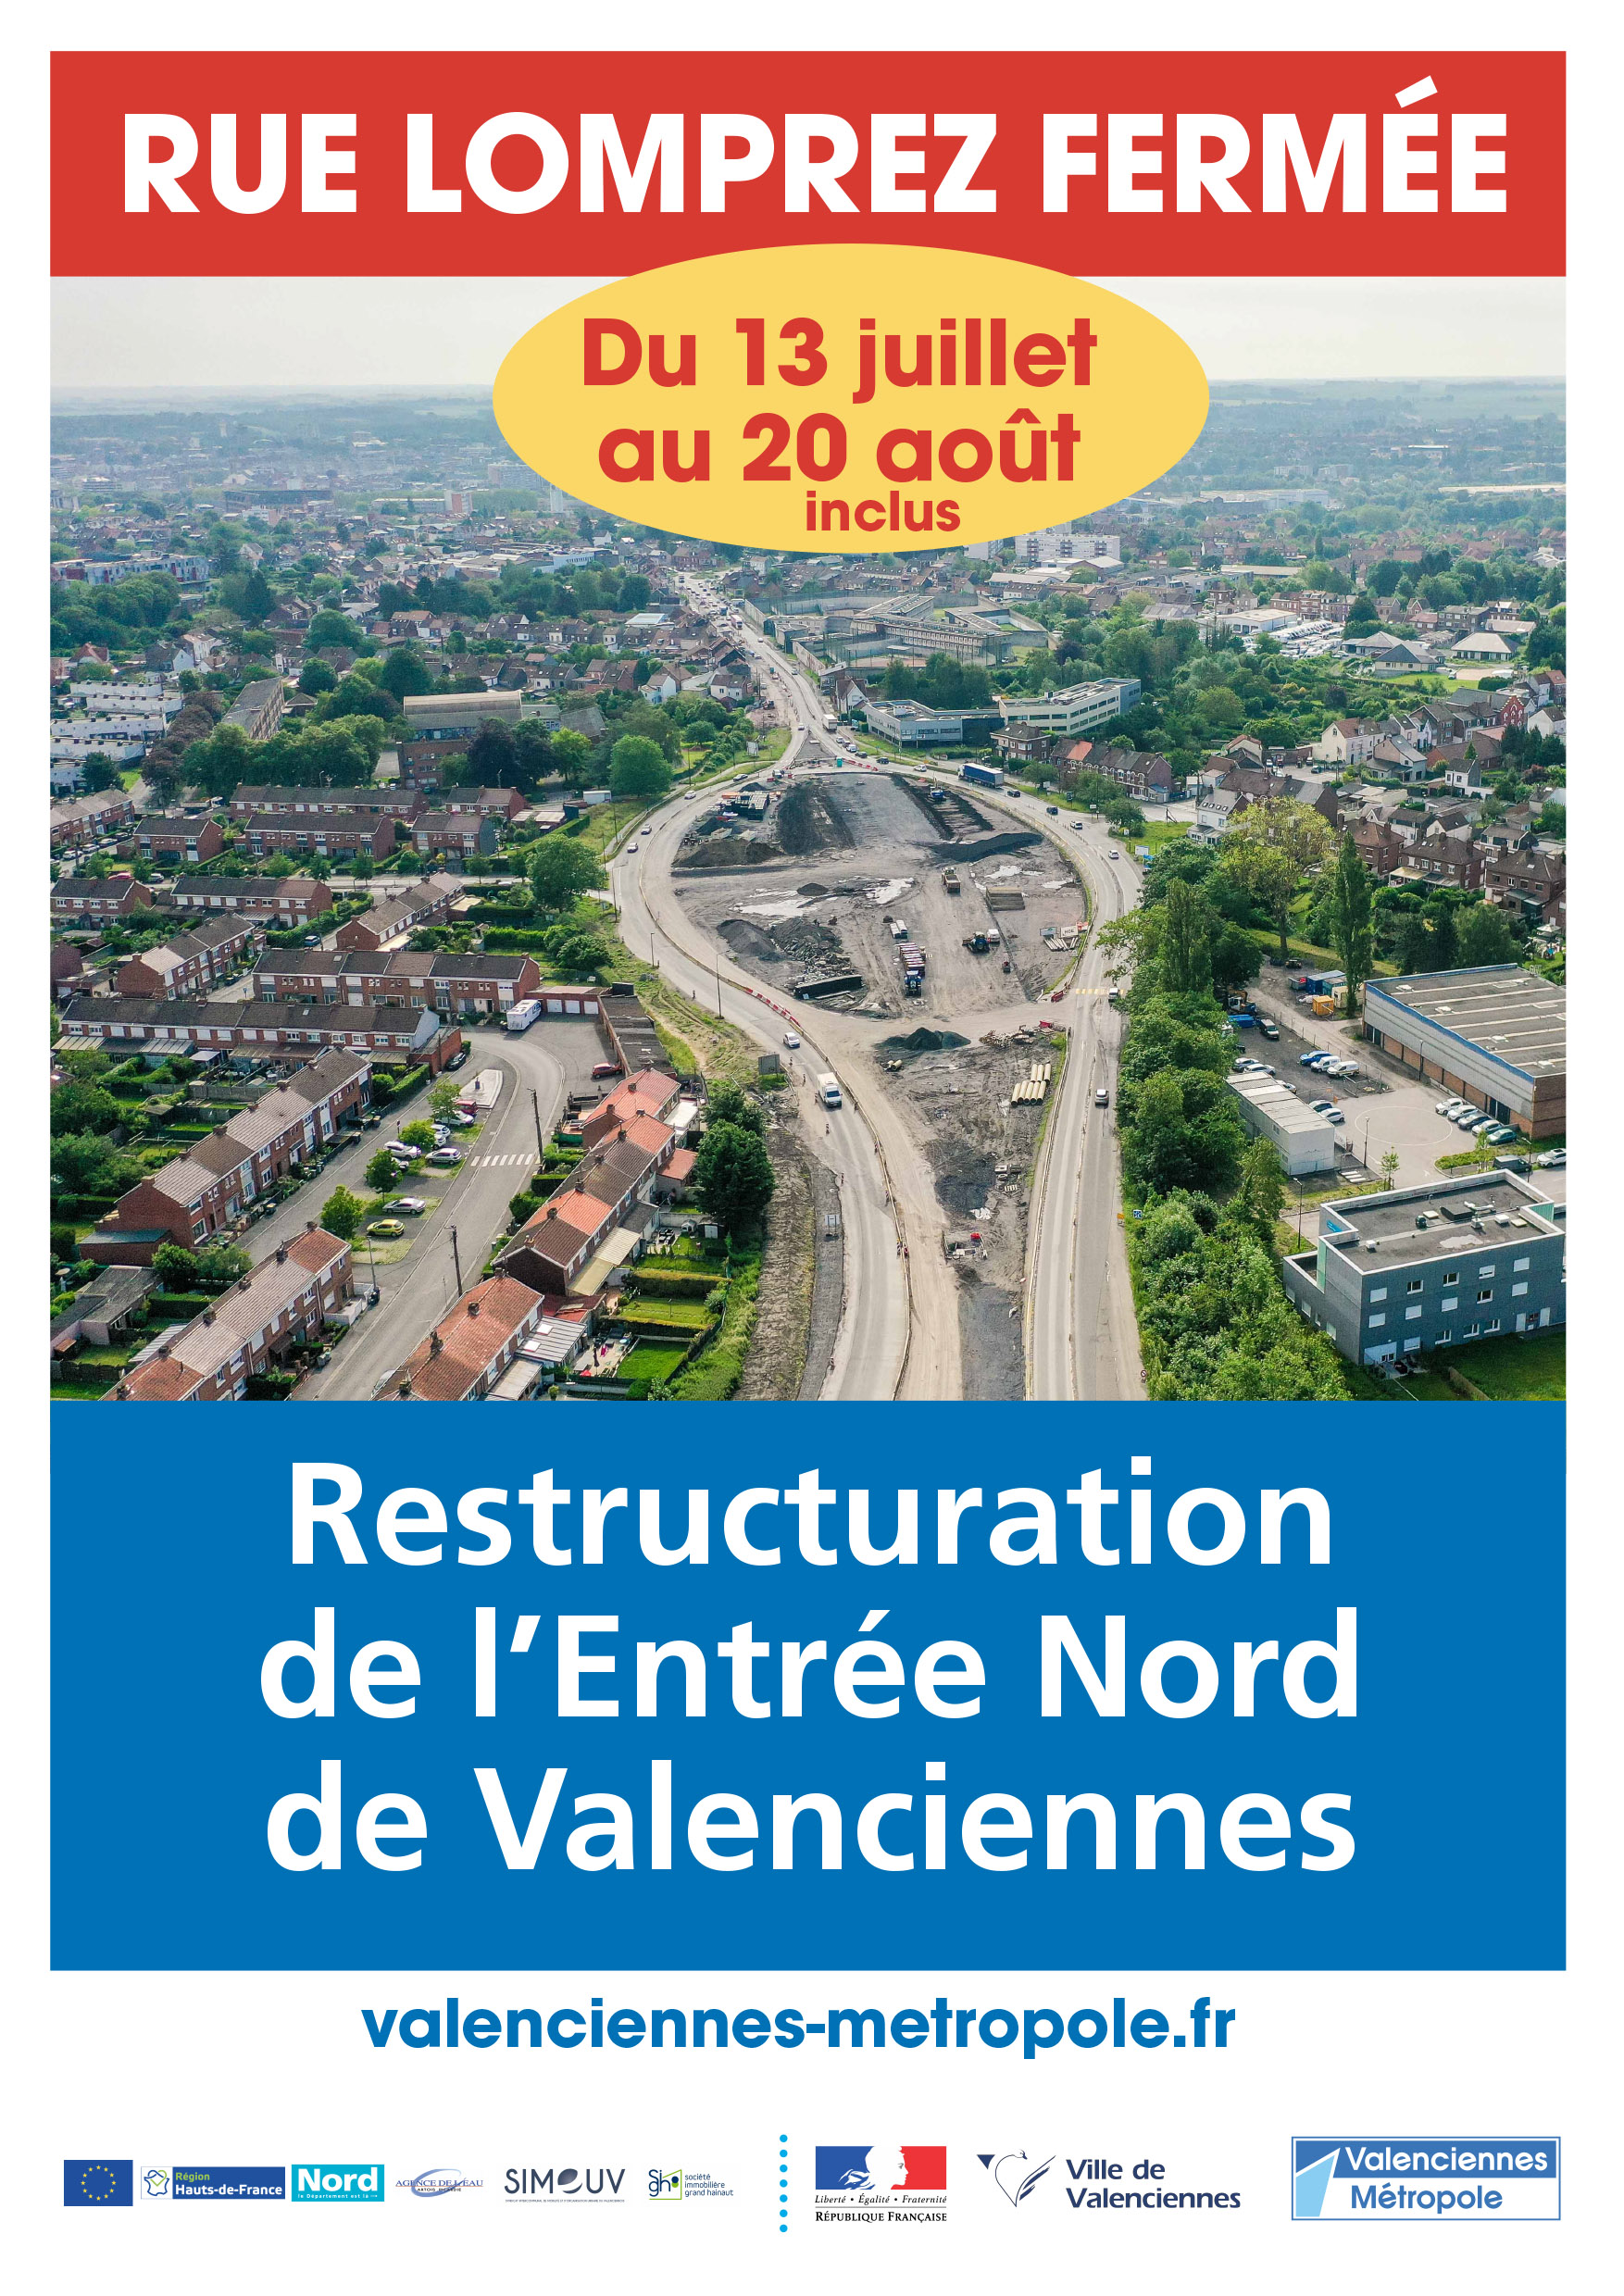 Restructuration de l’Entrée Nord à Valenciennes : Fermeture de l’avenue LOMPREZ du 13/07 au 20/08